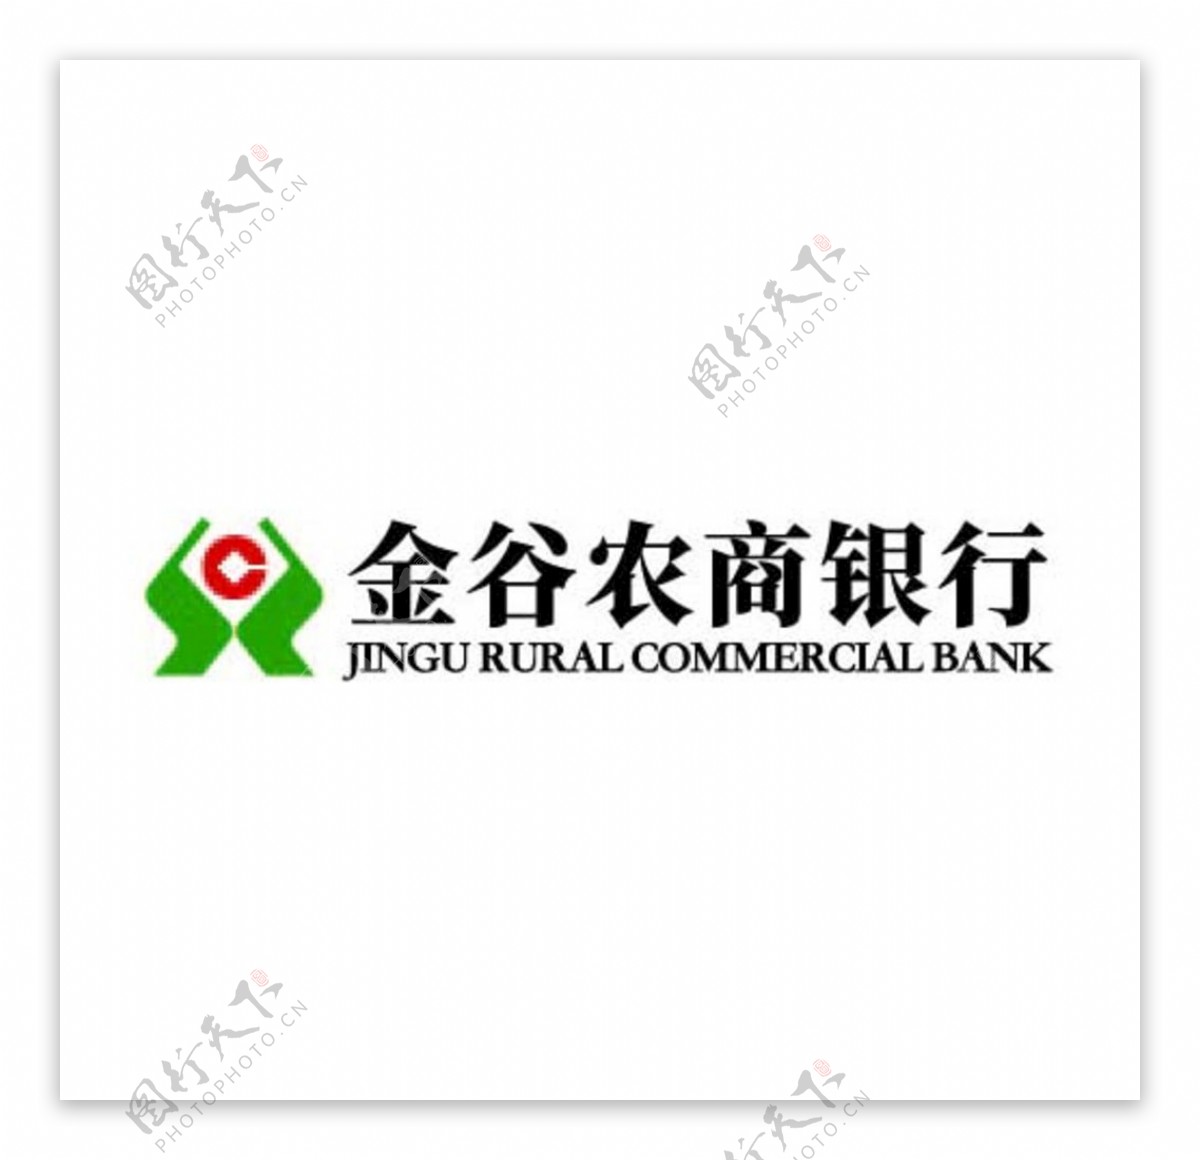 金谷农商行logo图片